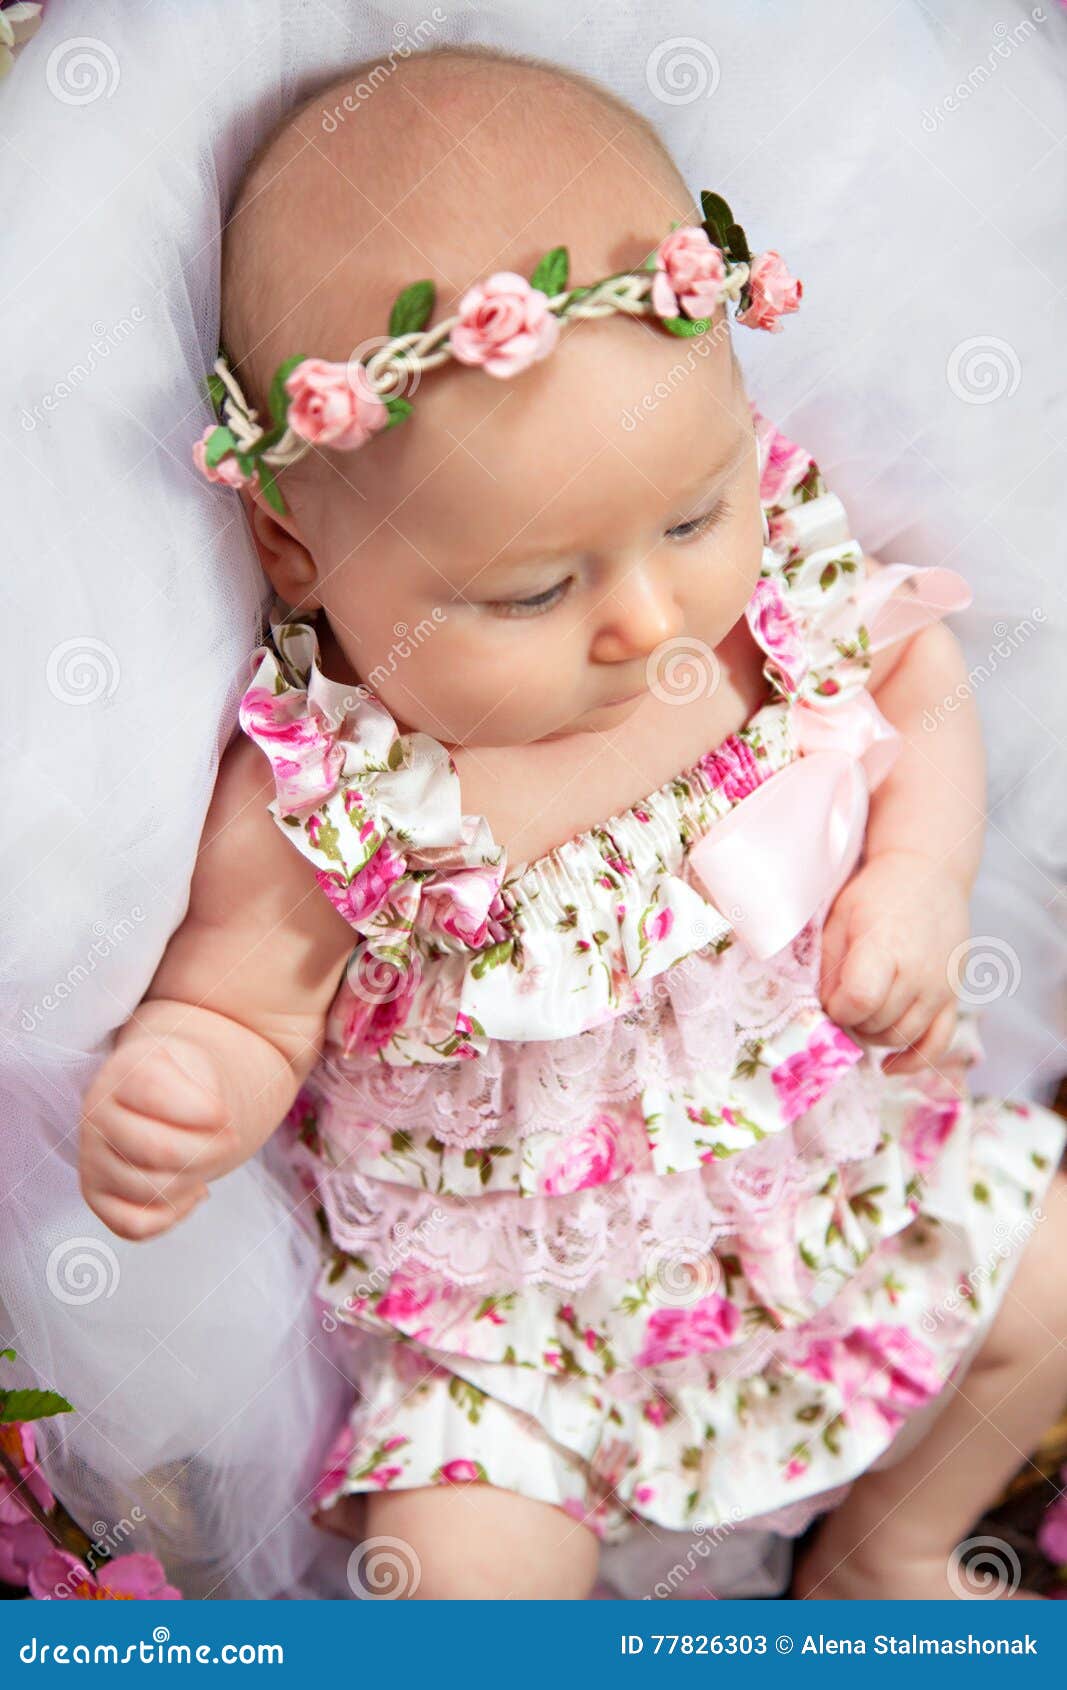 Lovely Little Child Girl in Princess Fairy Dress Stock Image ...